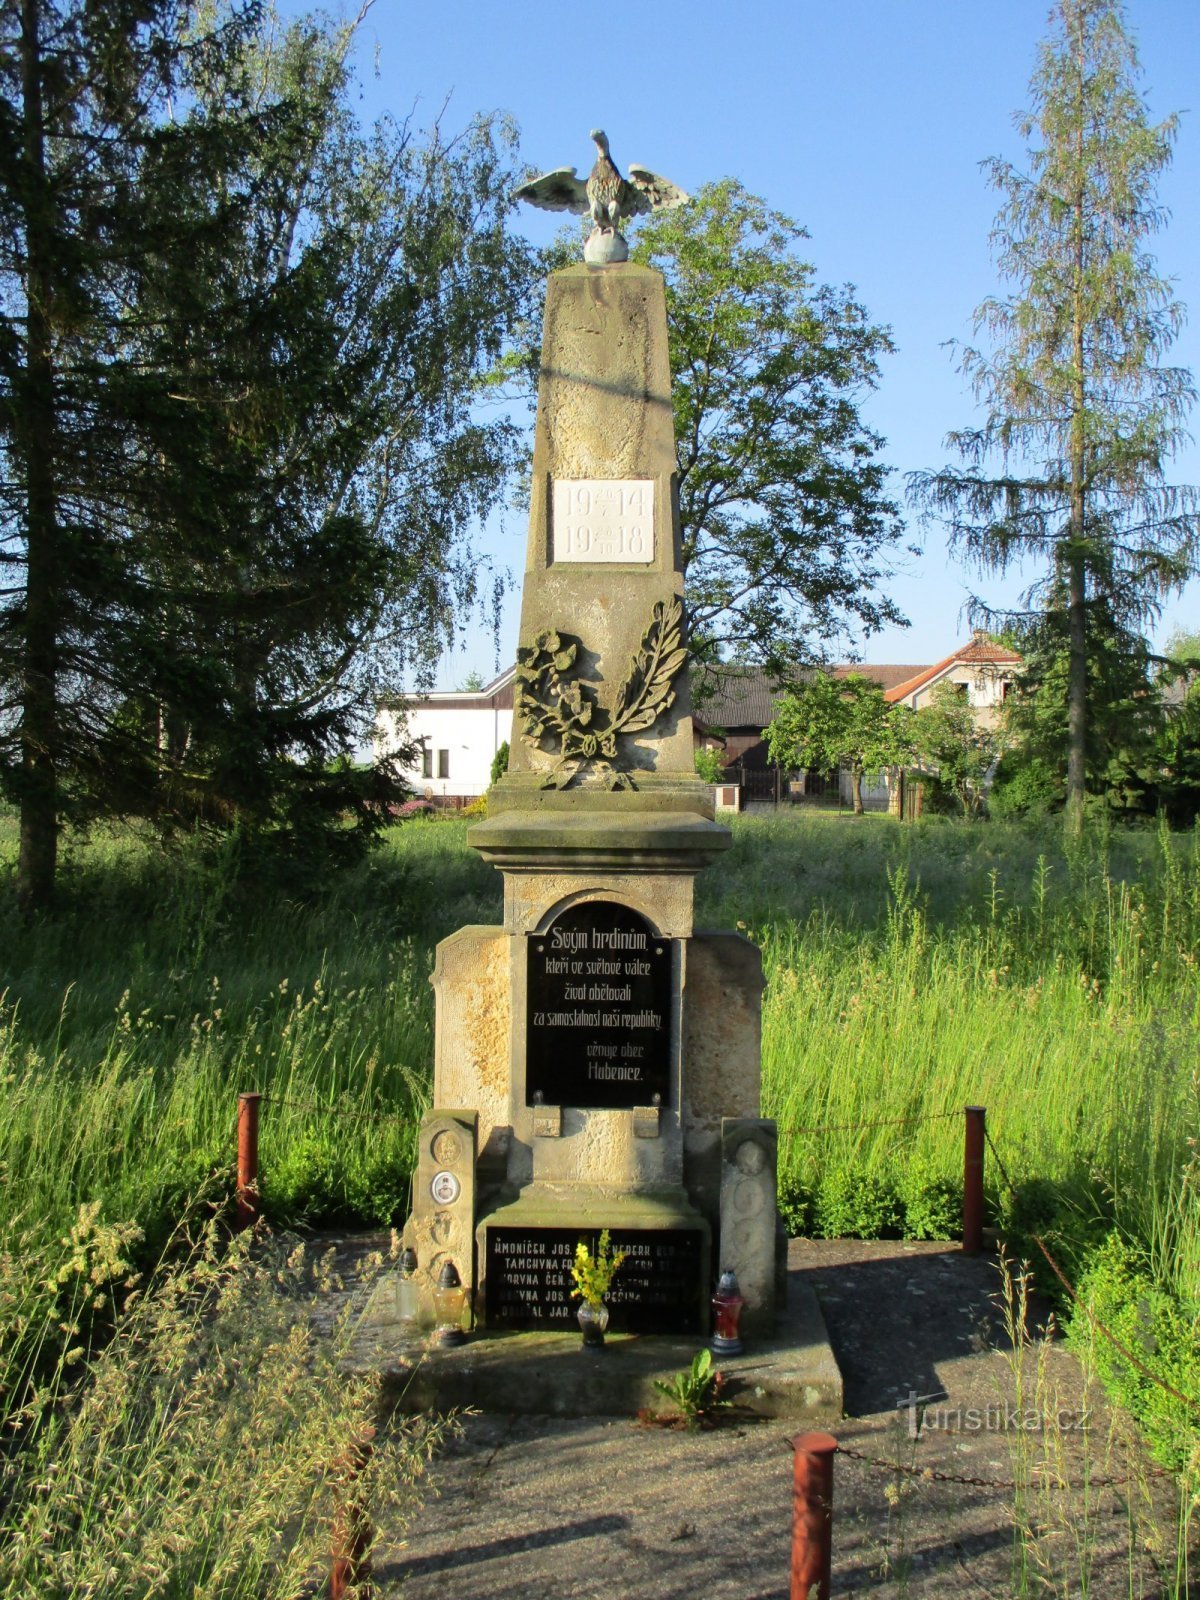 Đài tưởng niệm những người đã chết trong Chiến tranh thế giới thứ nhất (Hubenice)